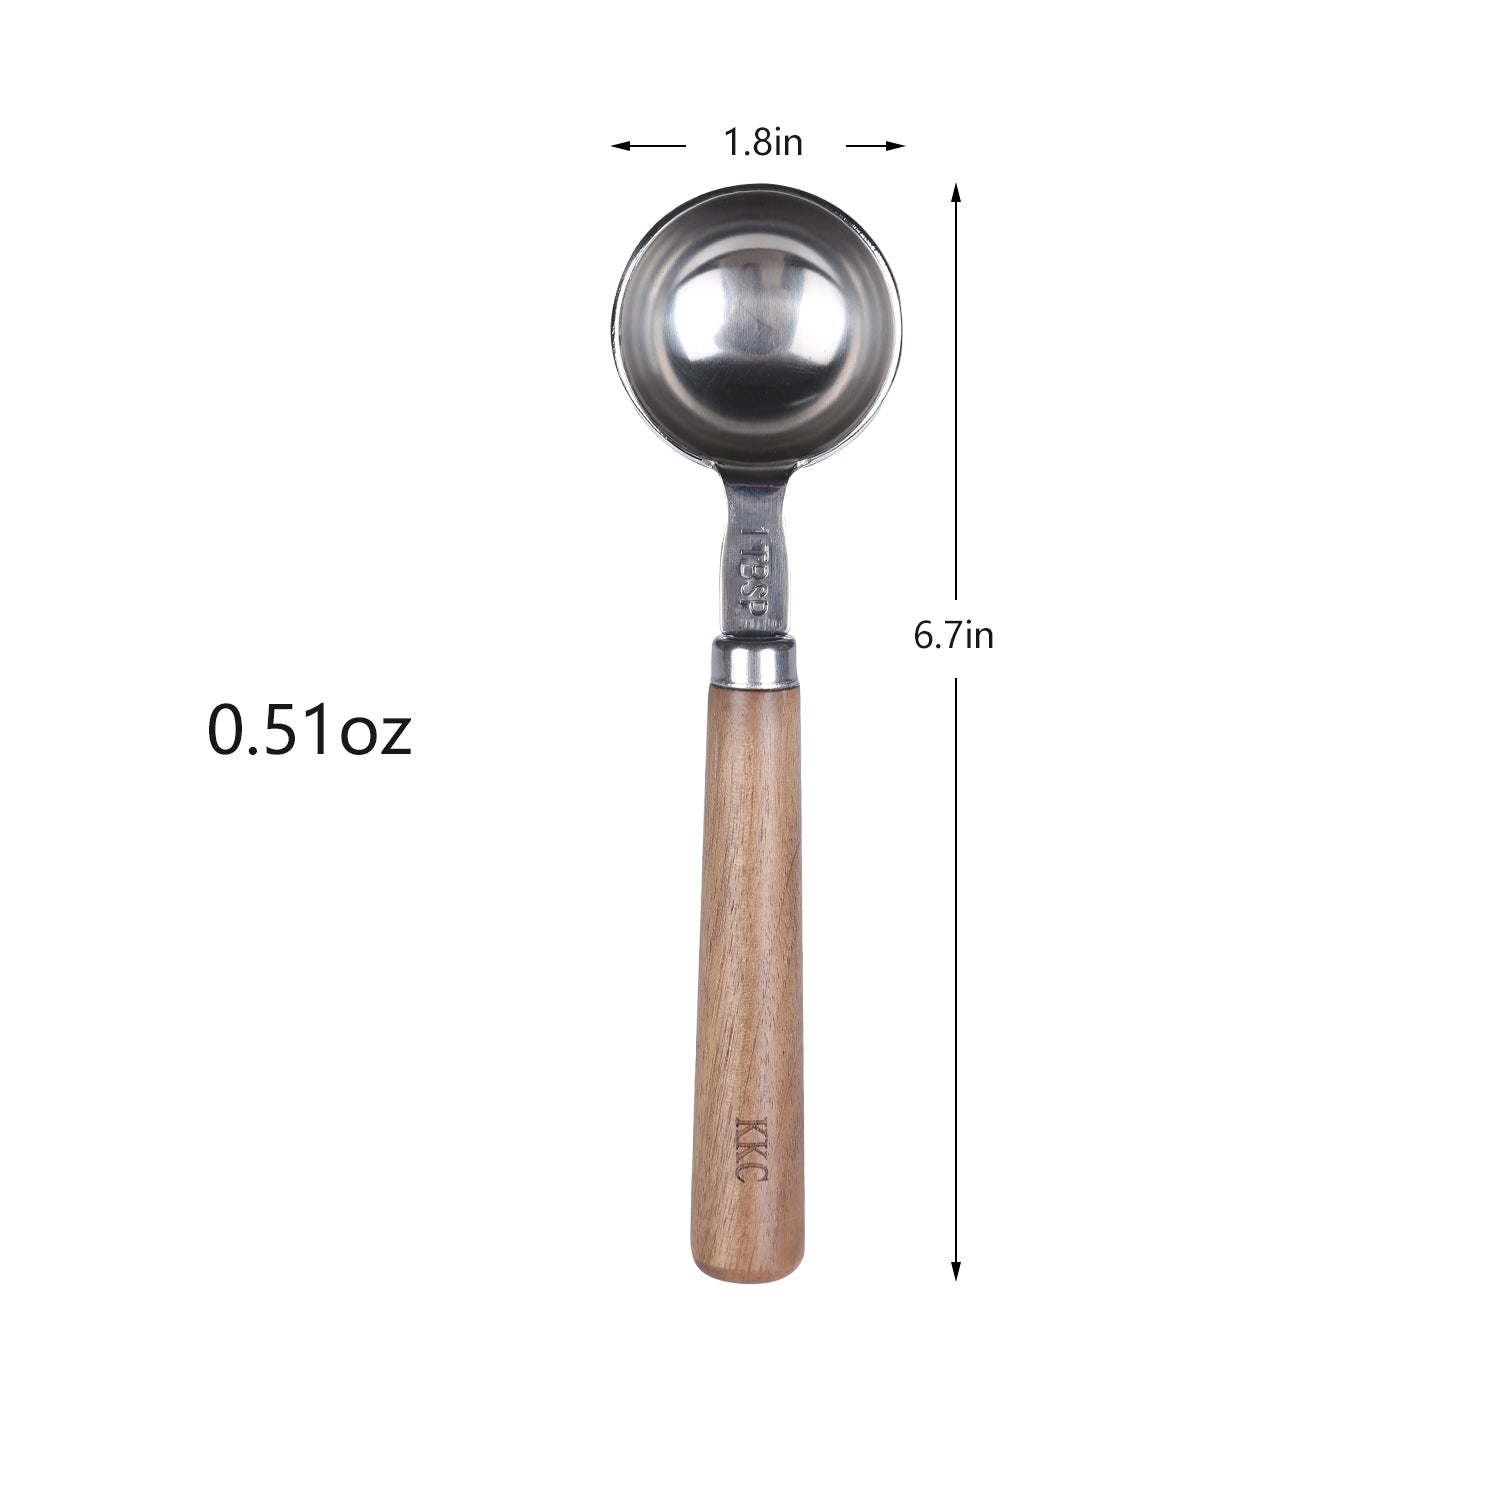 ONEKOO 7 Inches Long Handle Measuring Spoons Set, Premium Stainless Steel  Metal Spoon, Tablespoon & Teaspoon & Coffee Scoop, for Accurate Measure